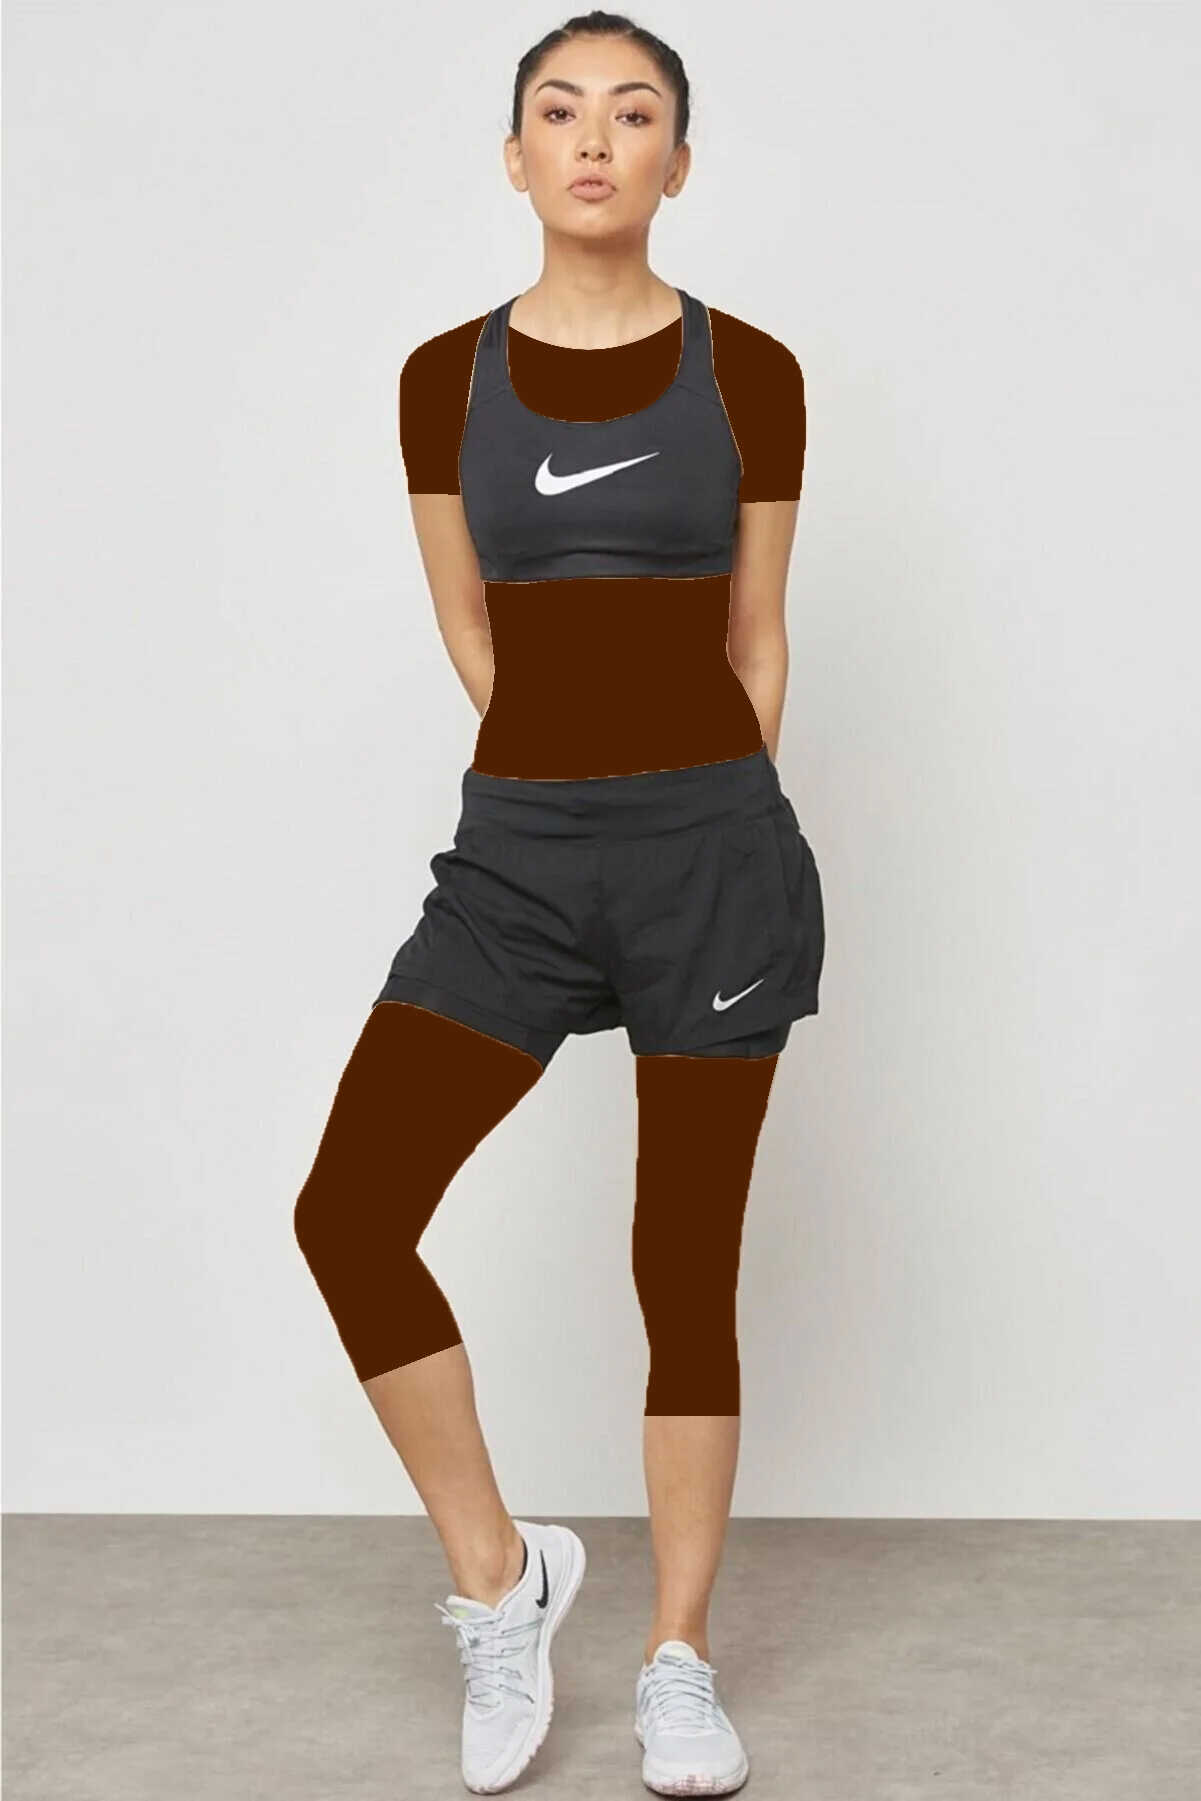 شلوارک برمودا ورزشی دو لایه جیب دار زنانه مشکی برند Nike